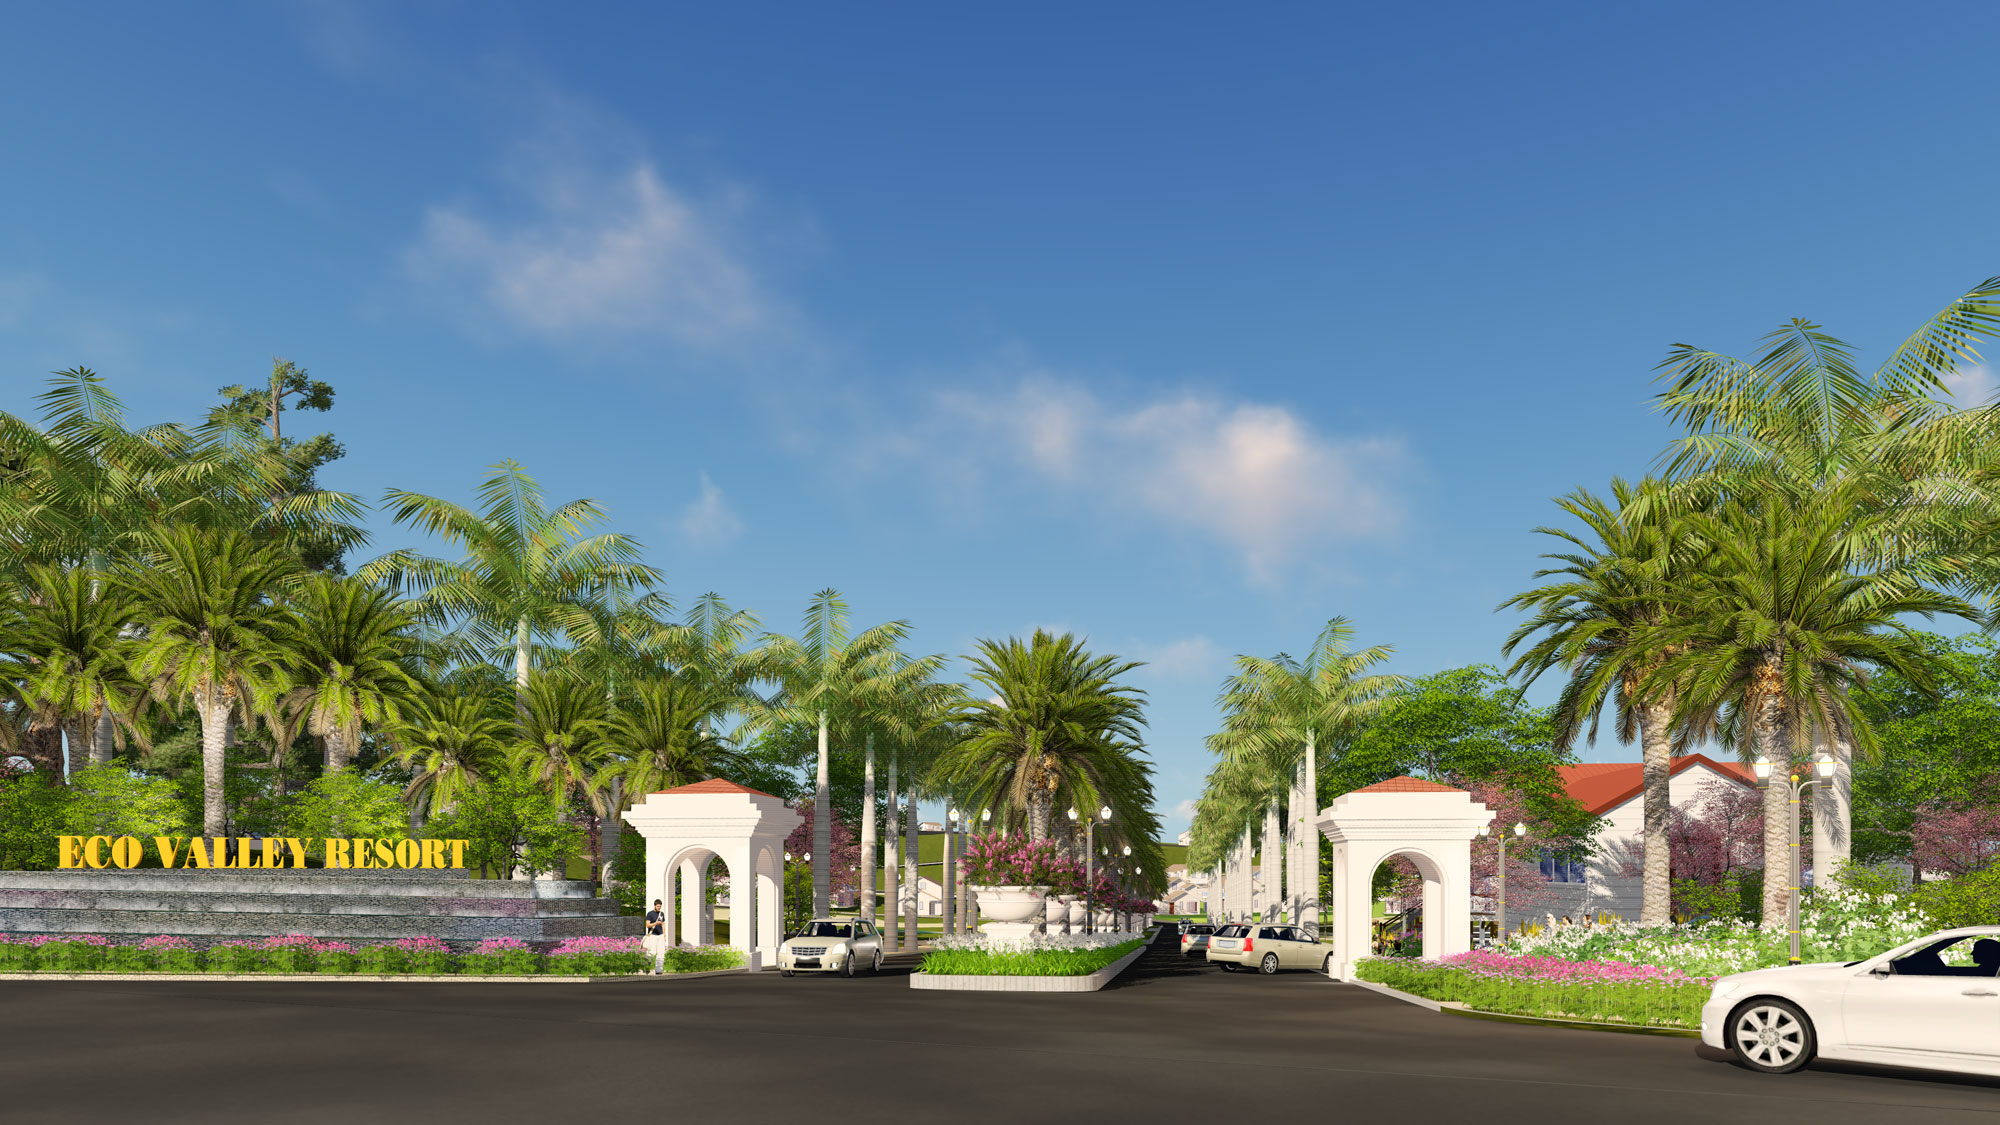 Eco Valley Resort được Eden Landscape thiết kế cảnh quan theo định hướng nghỉ dưỡng sinh thái